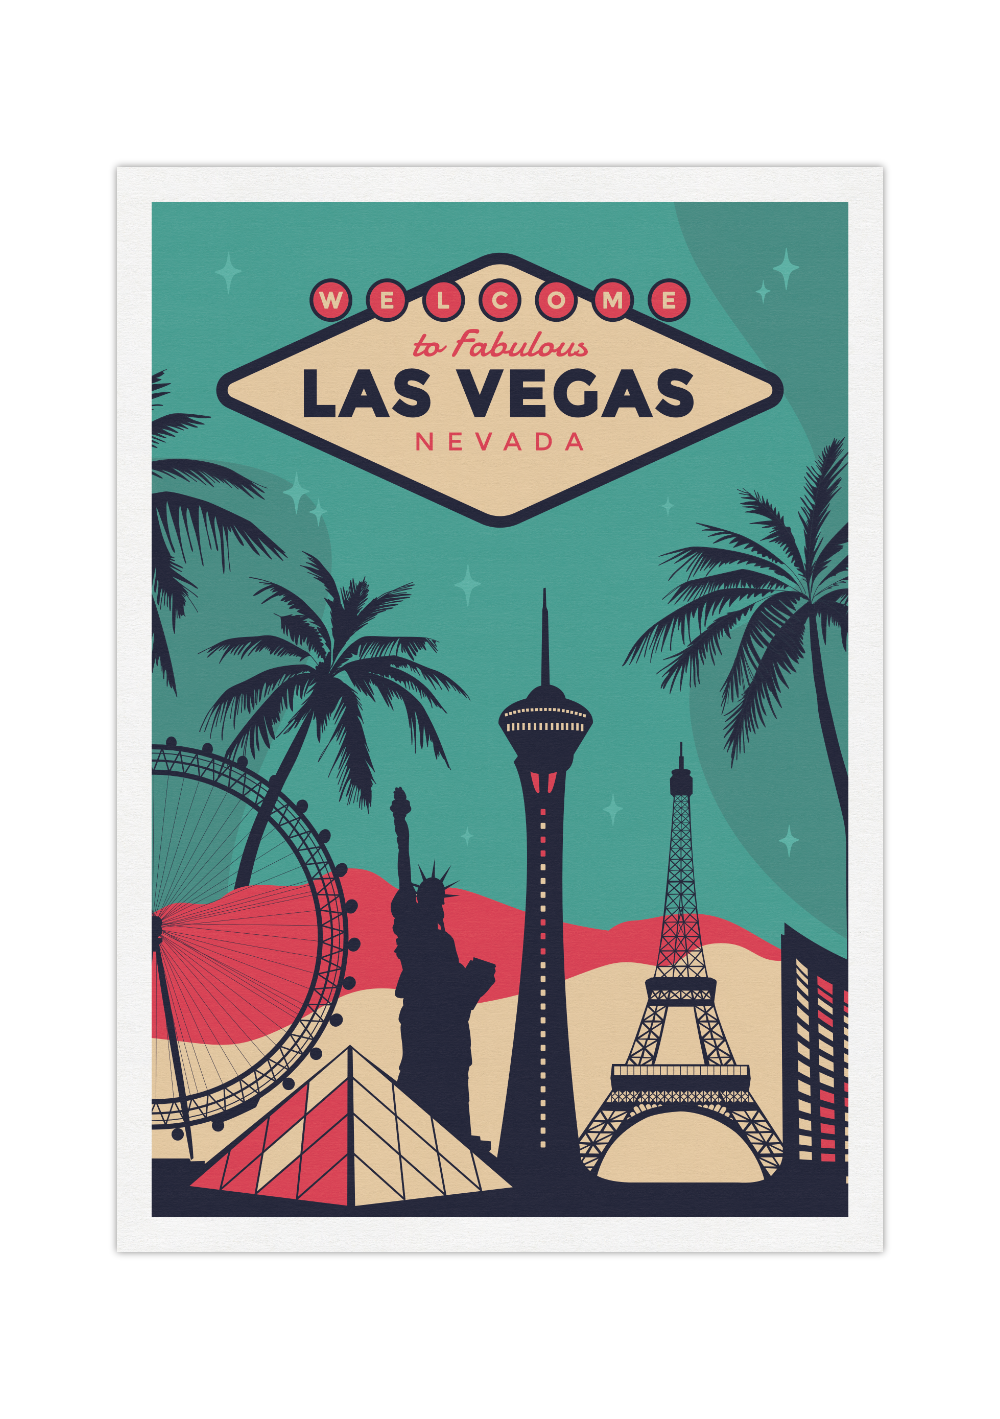 Das Vintage Poster der Stadt Las Vegas in Nevada, USA zeigt dir die Skyline von Vegas und deren typische Sehenswürdigkeiten.